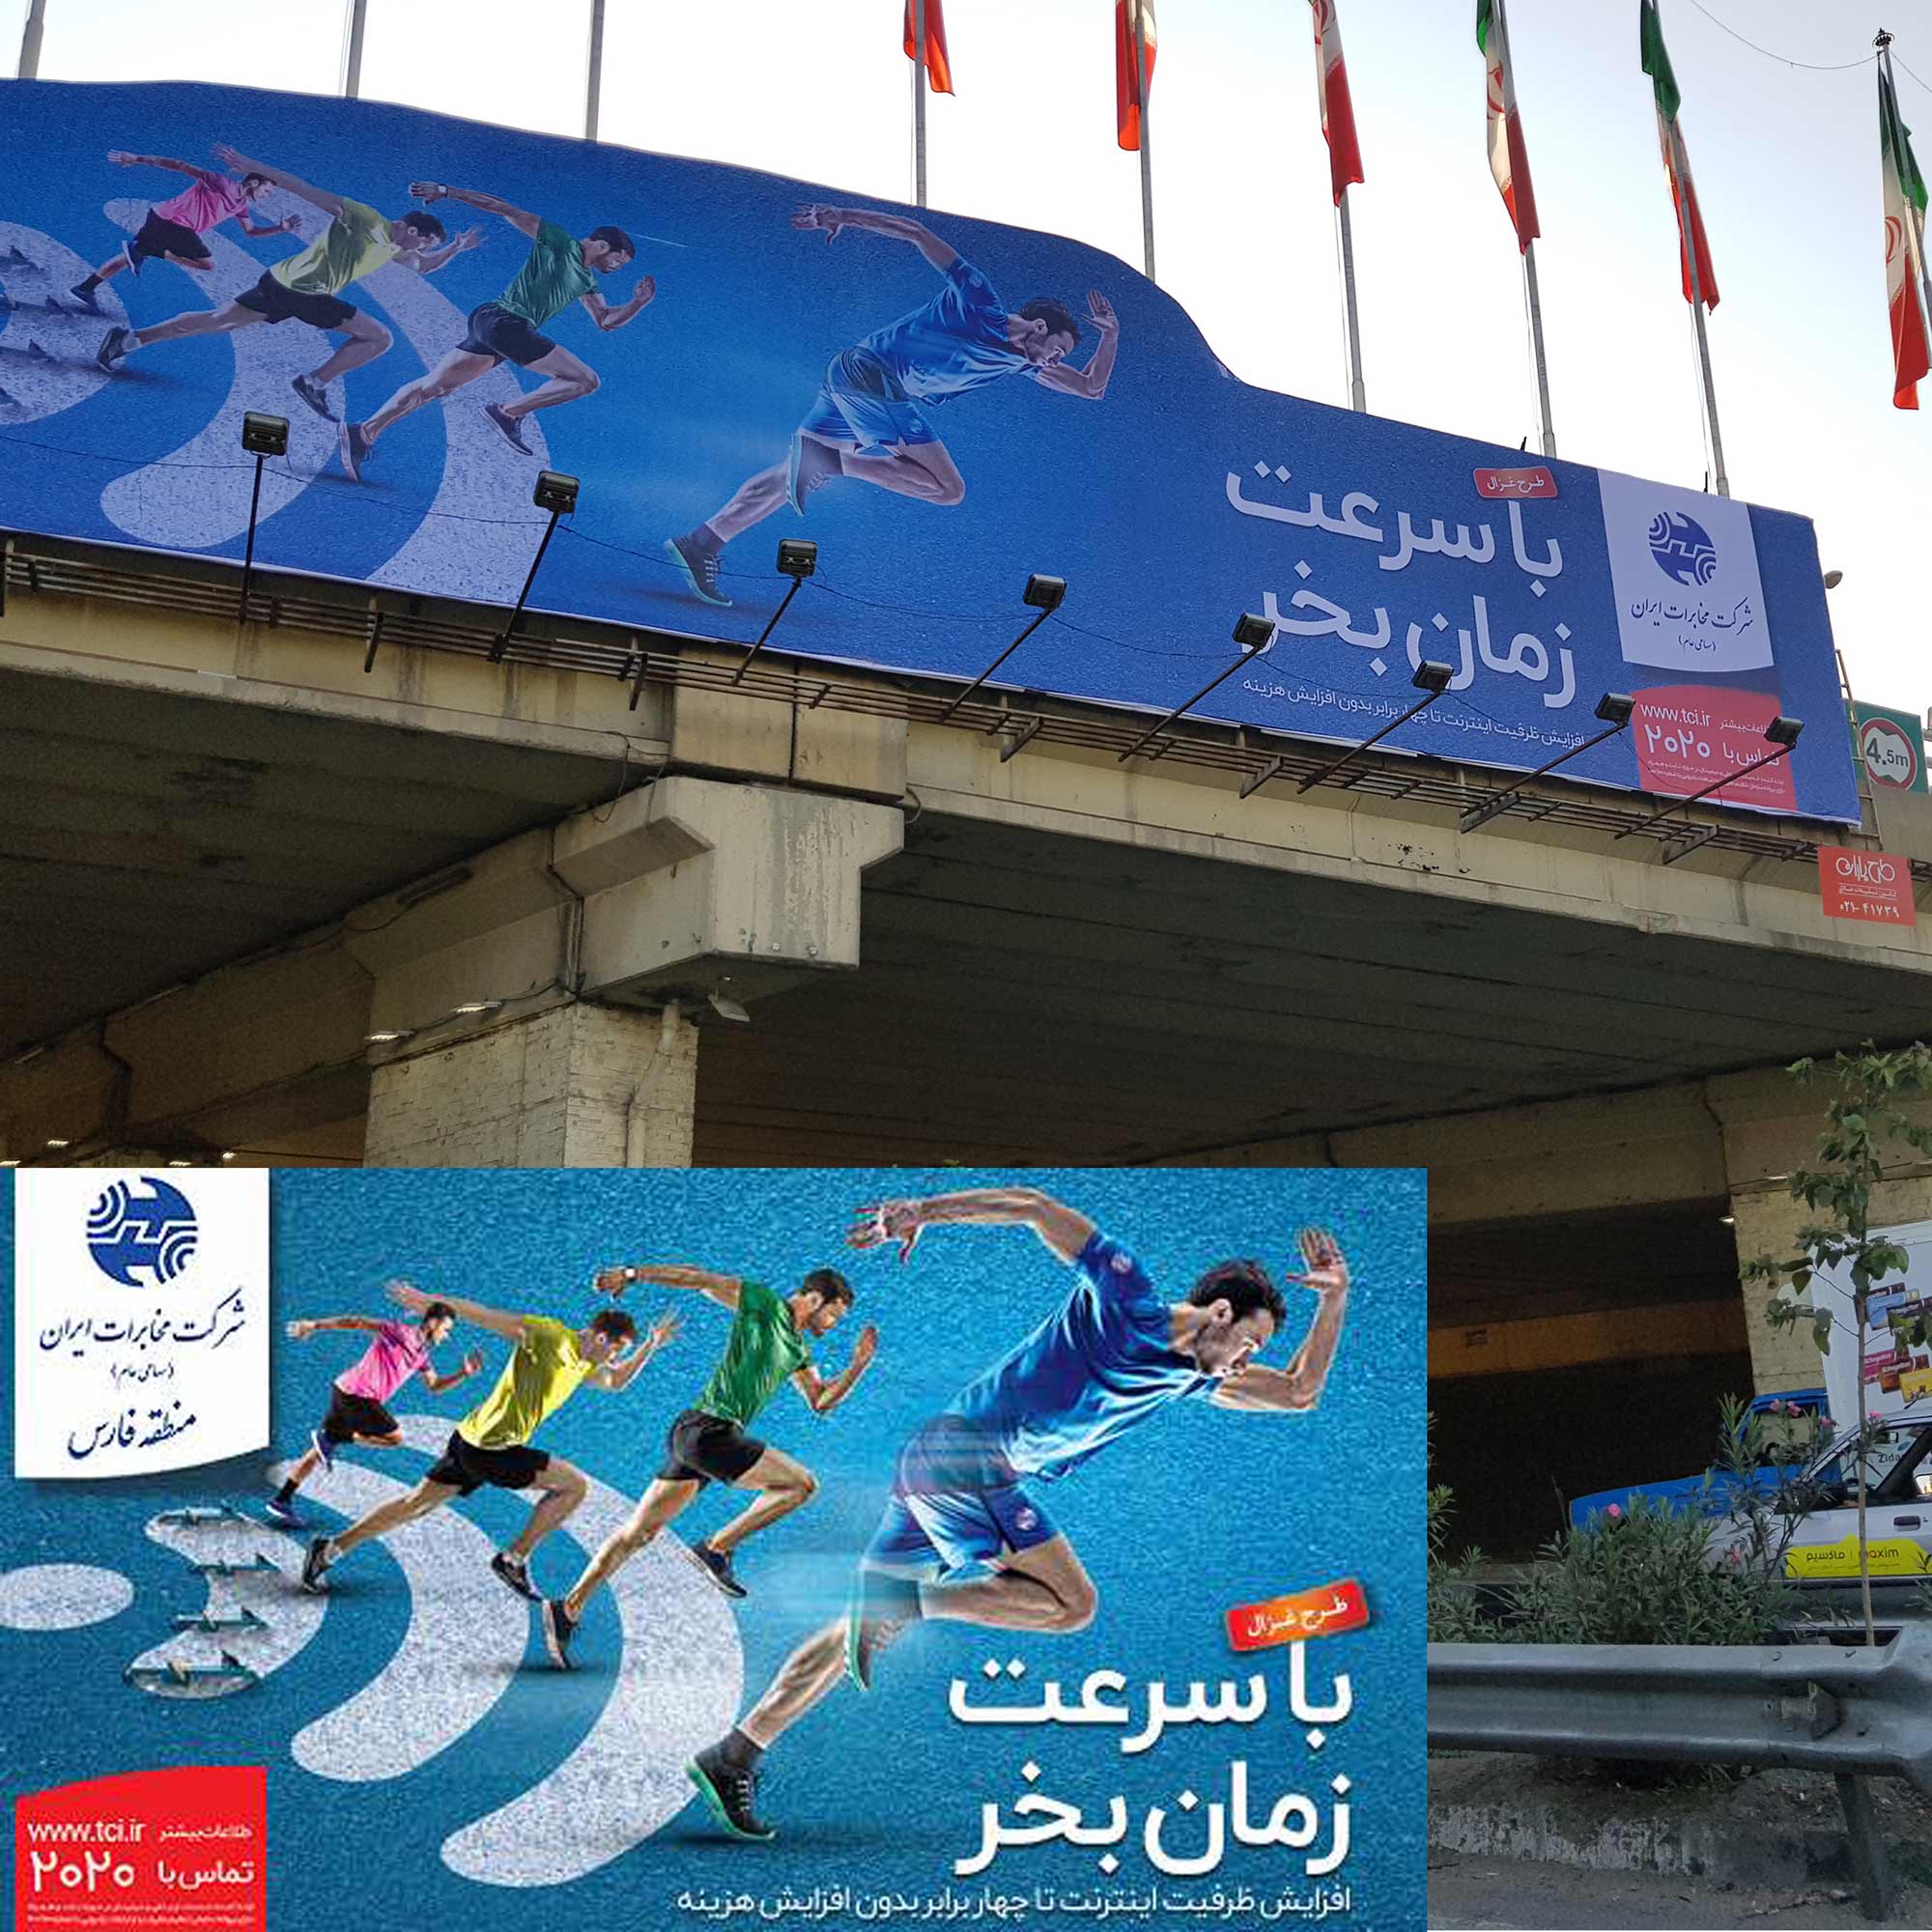 فونت ایران یکان در تبلیغات شهری